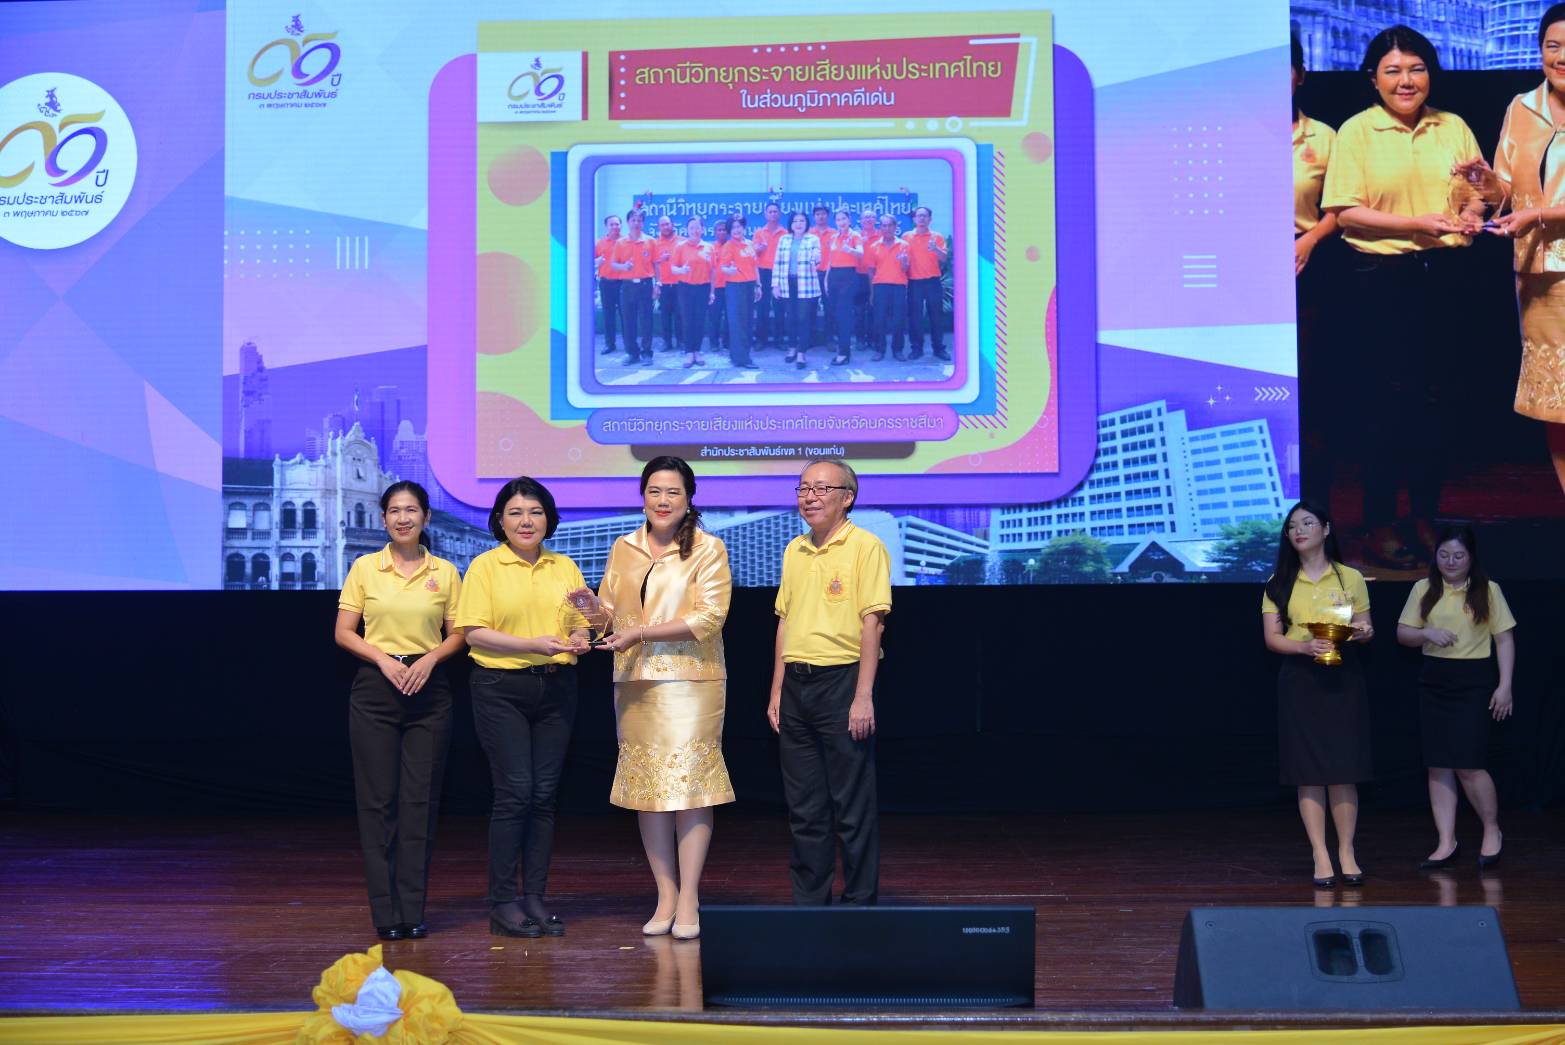 สวท.นครราชสีมา รับรางวัลสถานีวิทยุกระจายเสียงแห่งประเทศไทยในส่วนภูมิภาคดีเด่น ประจำปี 2567 ในงานวันสถาปนากรมประชาสัมพันธ์ ปีที่ 91